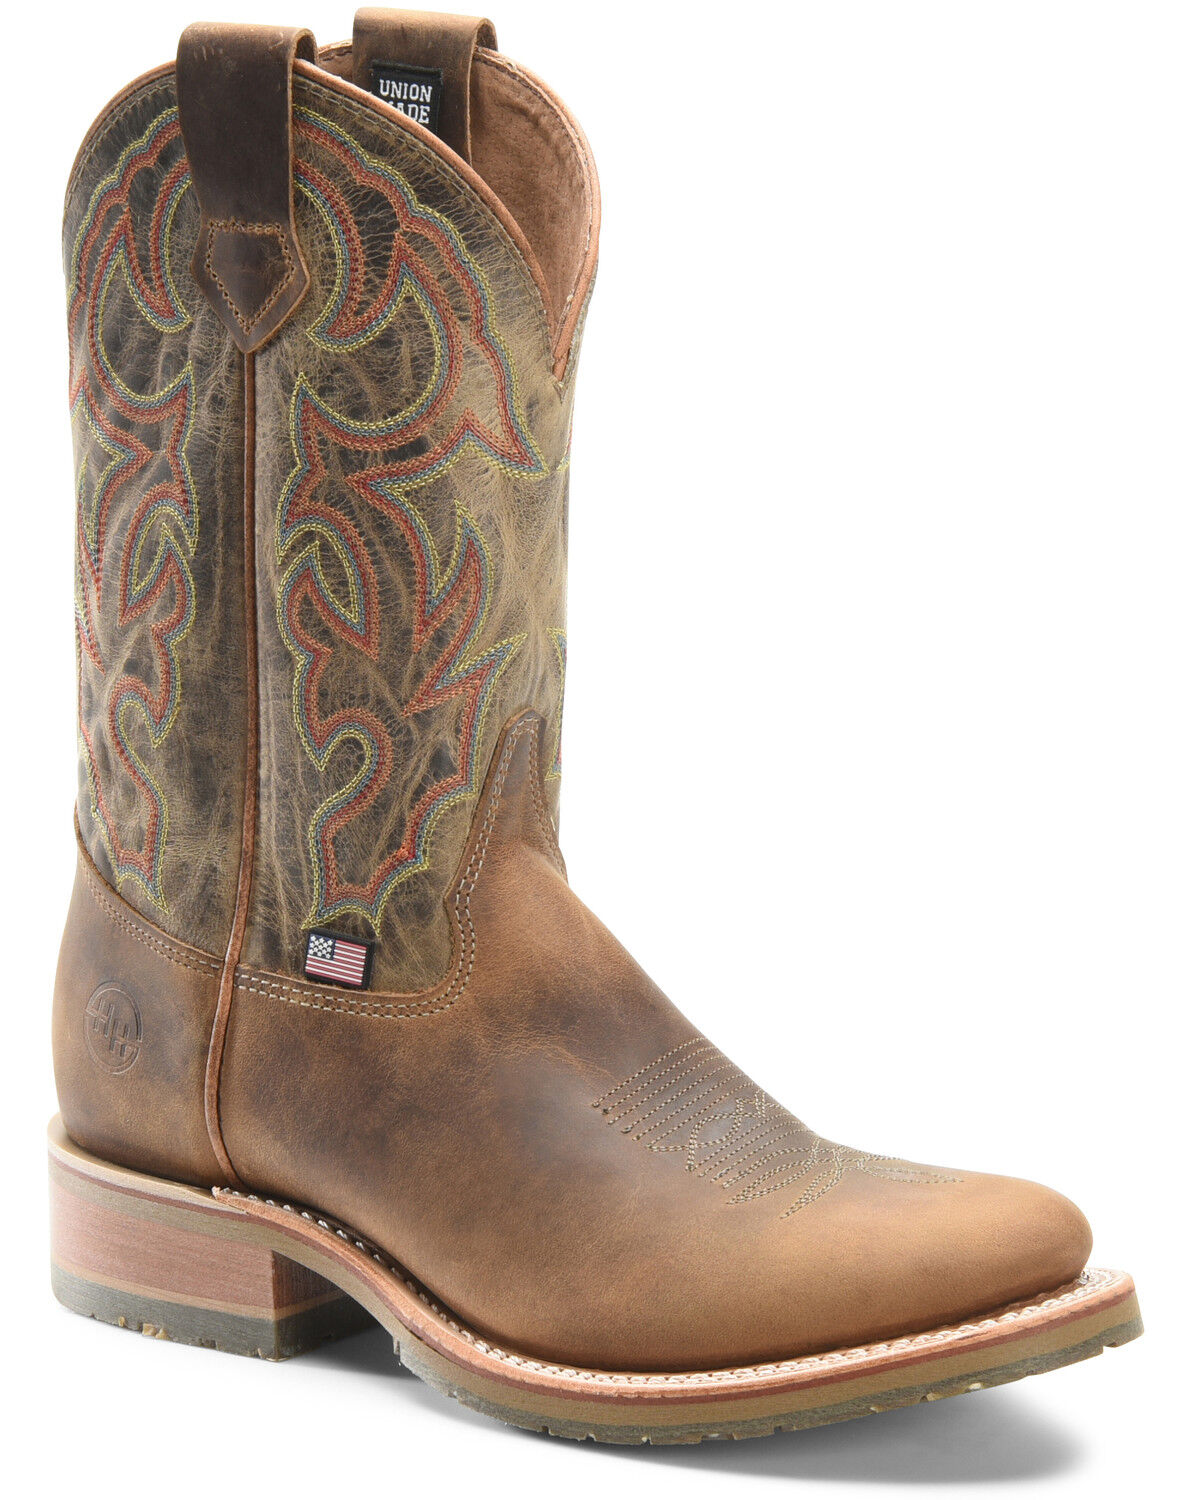 Jaison Western Boots - Round Toe 